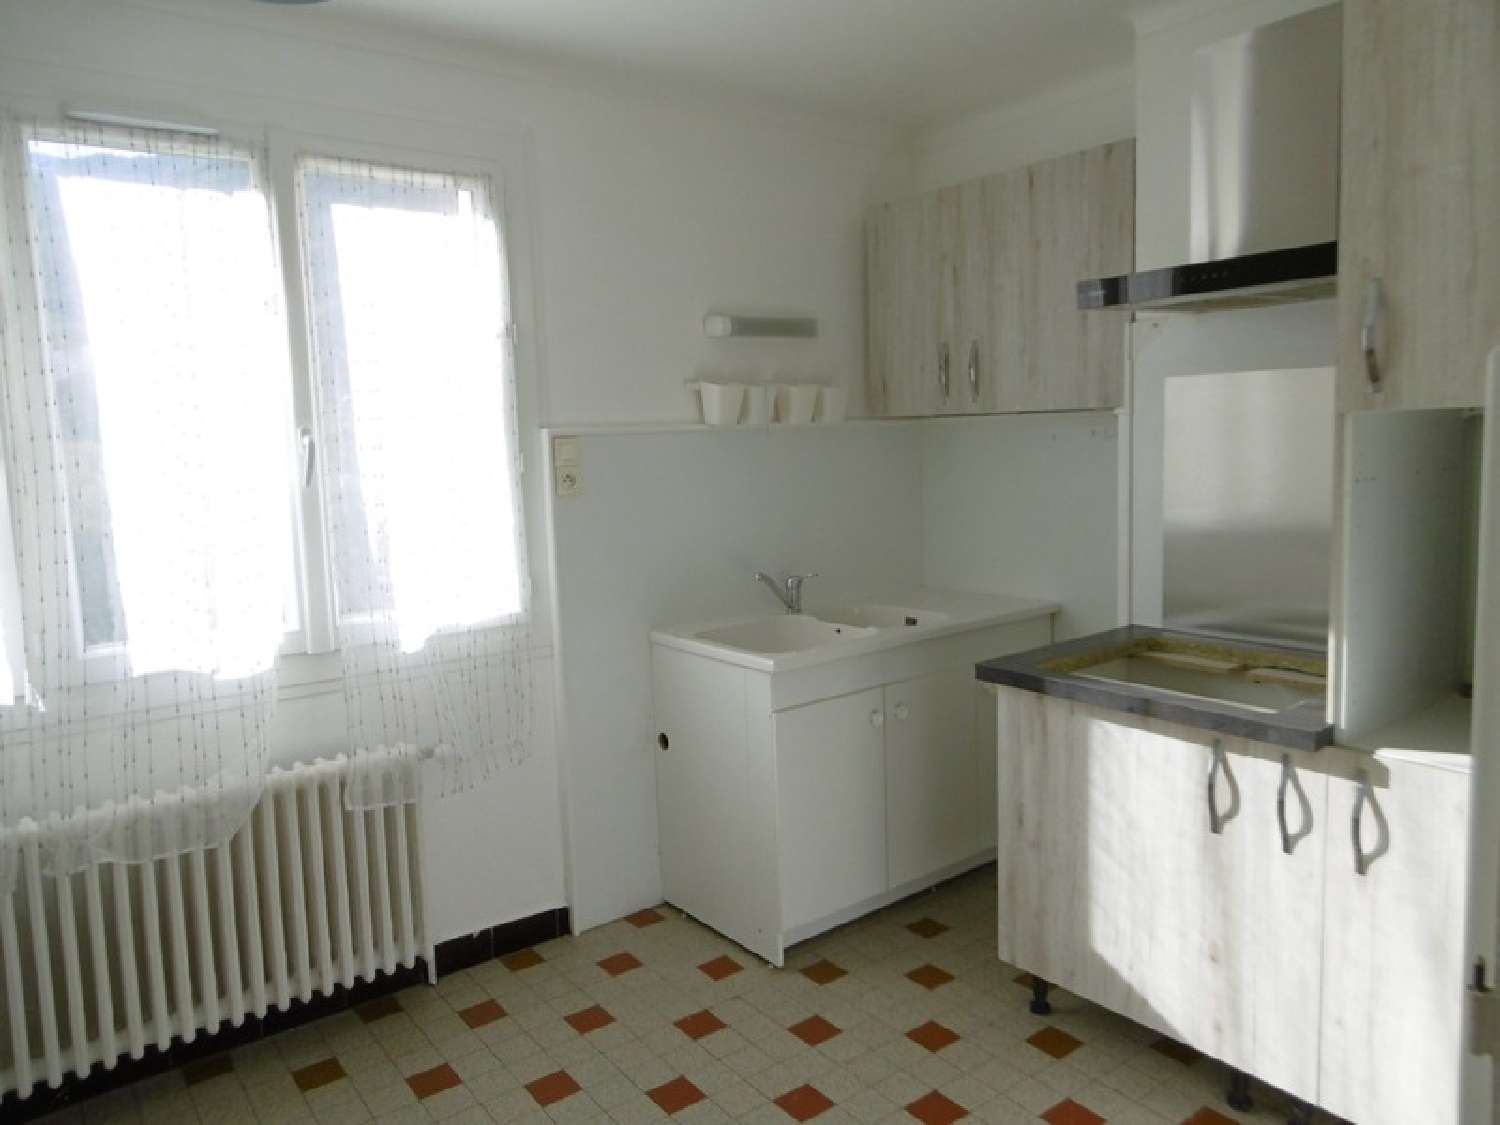  for sale apartment Saint-Jean-de-Maurienne Savoie 4